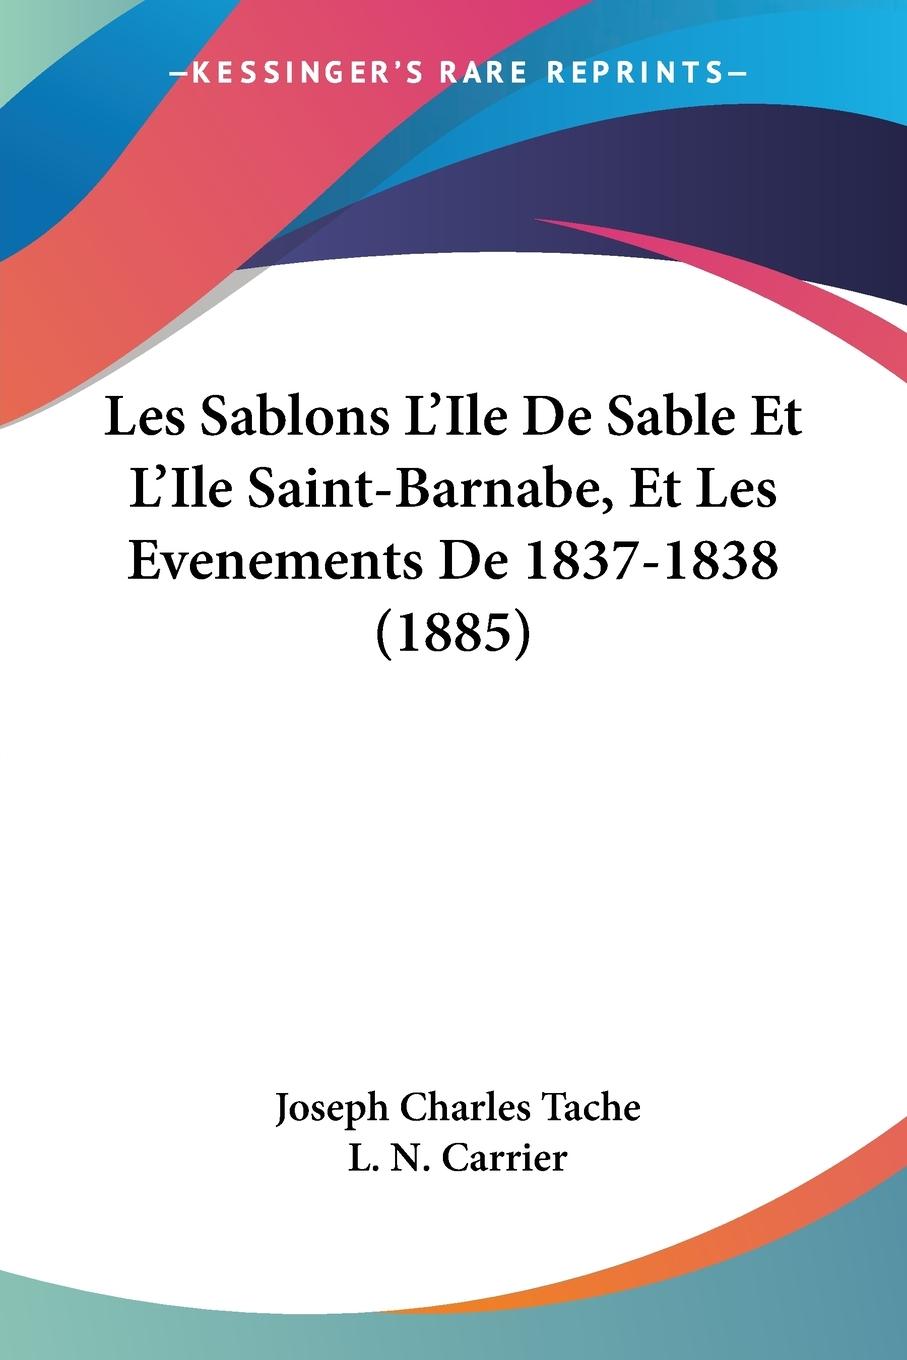 Les Sablons L Ile De Sable Et L Ile Saint-Barnabe, Et Les Evenements De 1837-1838 (1885) - Tache, Joseph Charles Carrier, L. N.